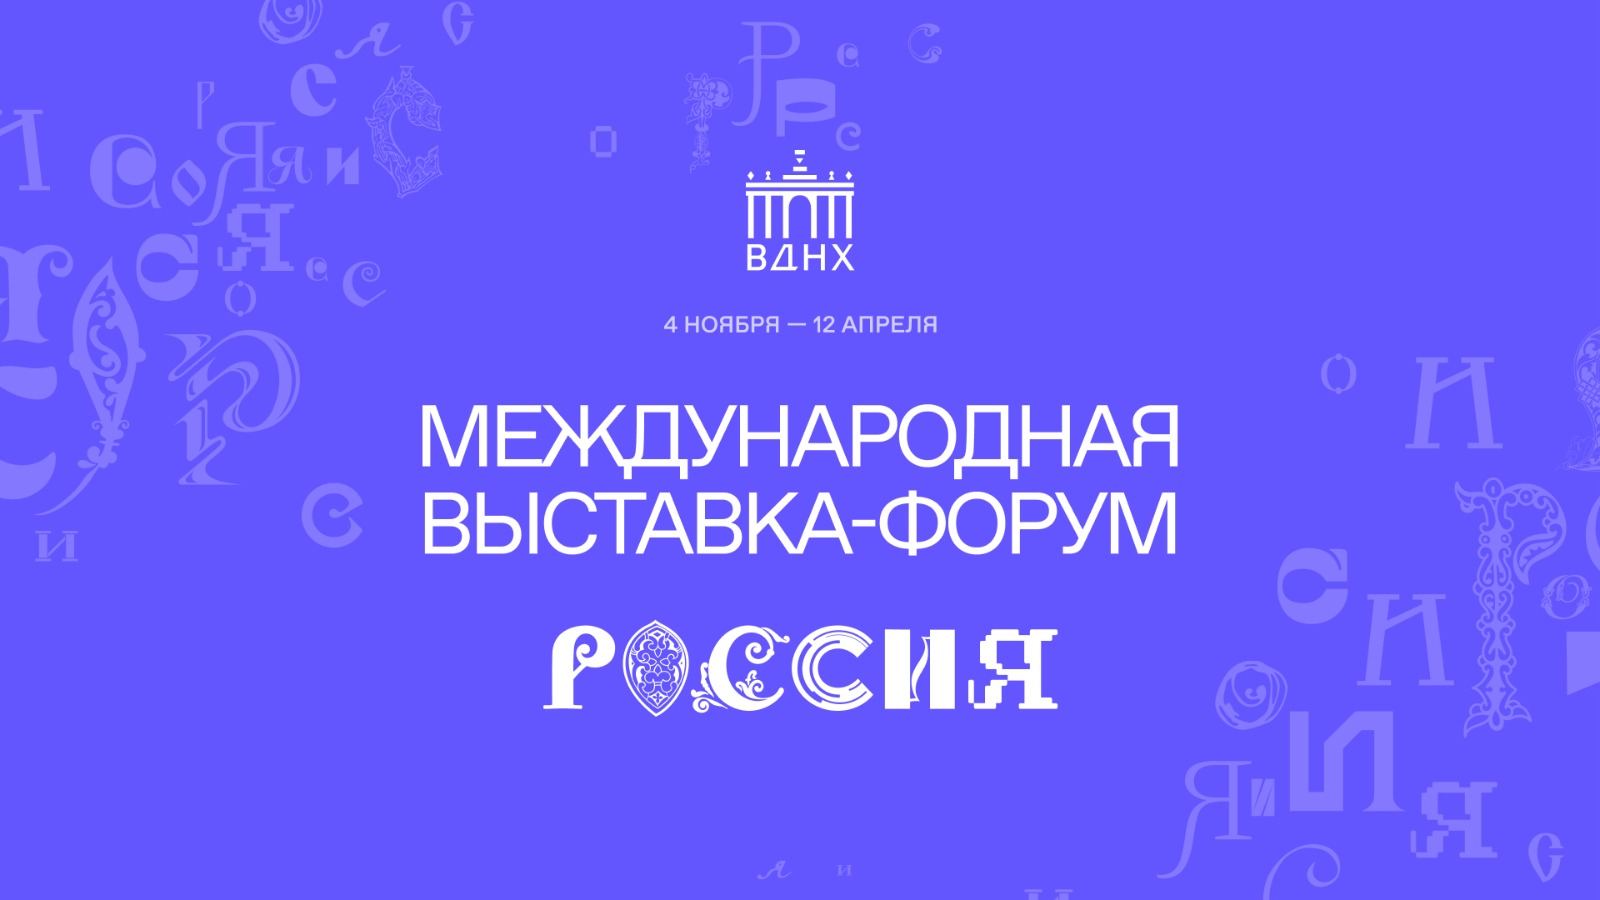 «Знание» ждет тебя на Международной выставке-форуме «Россия».